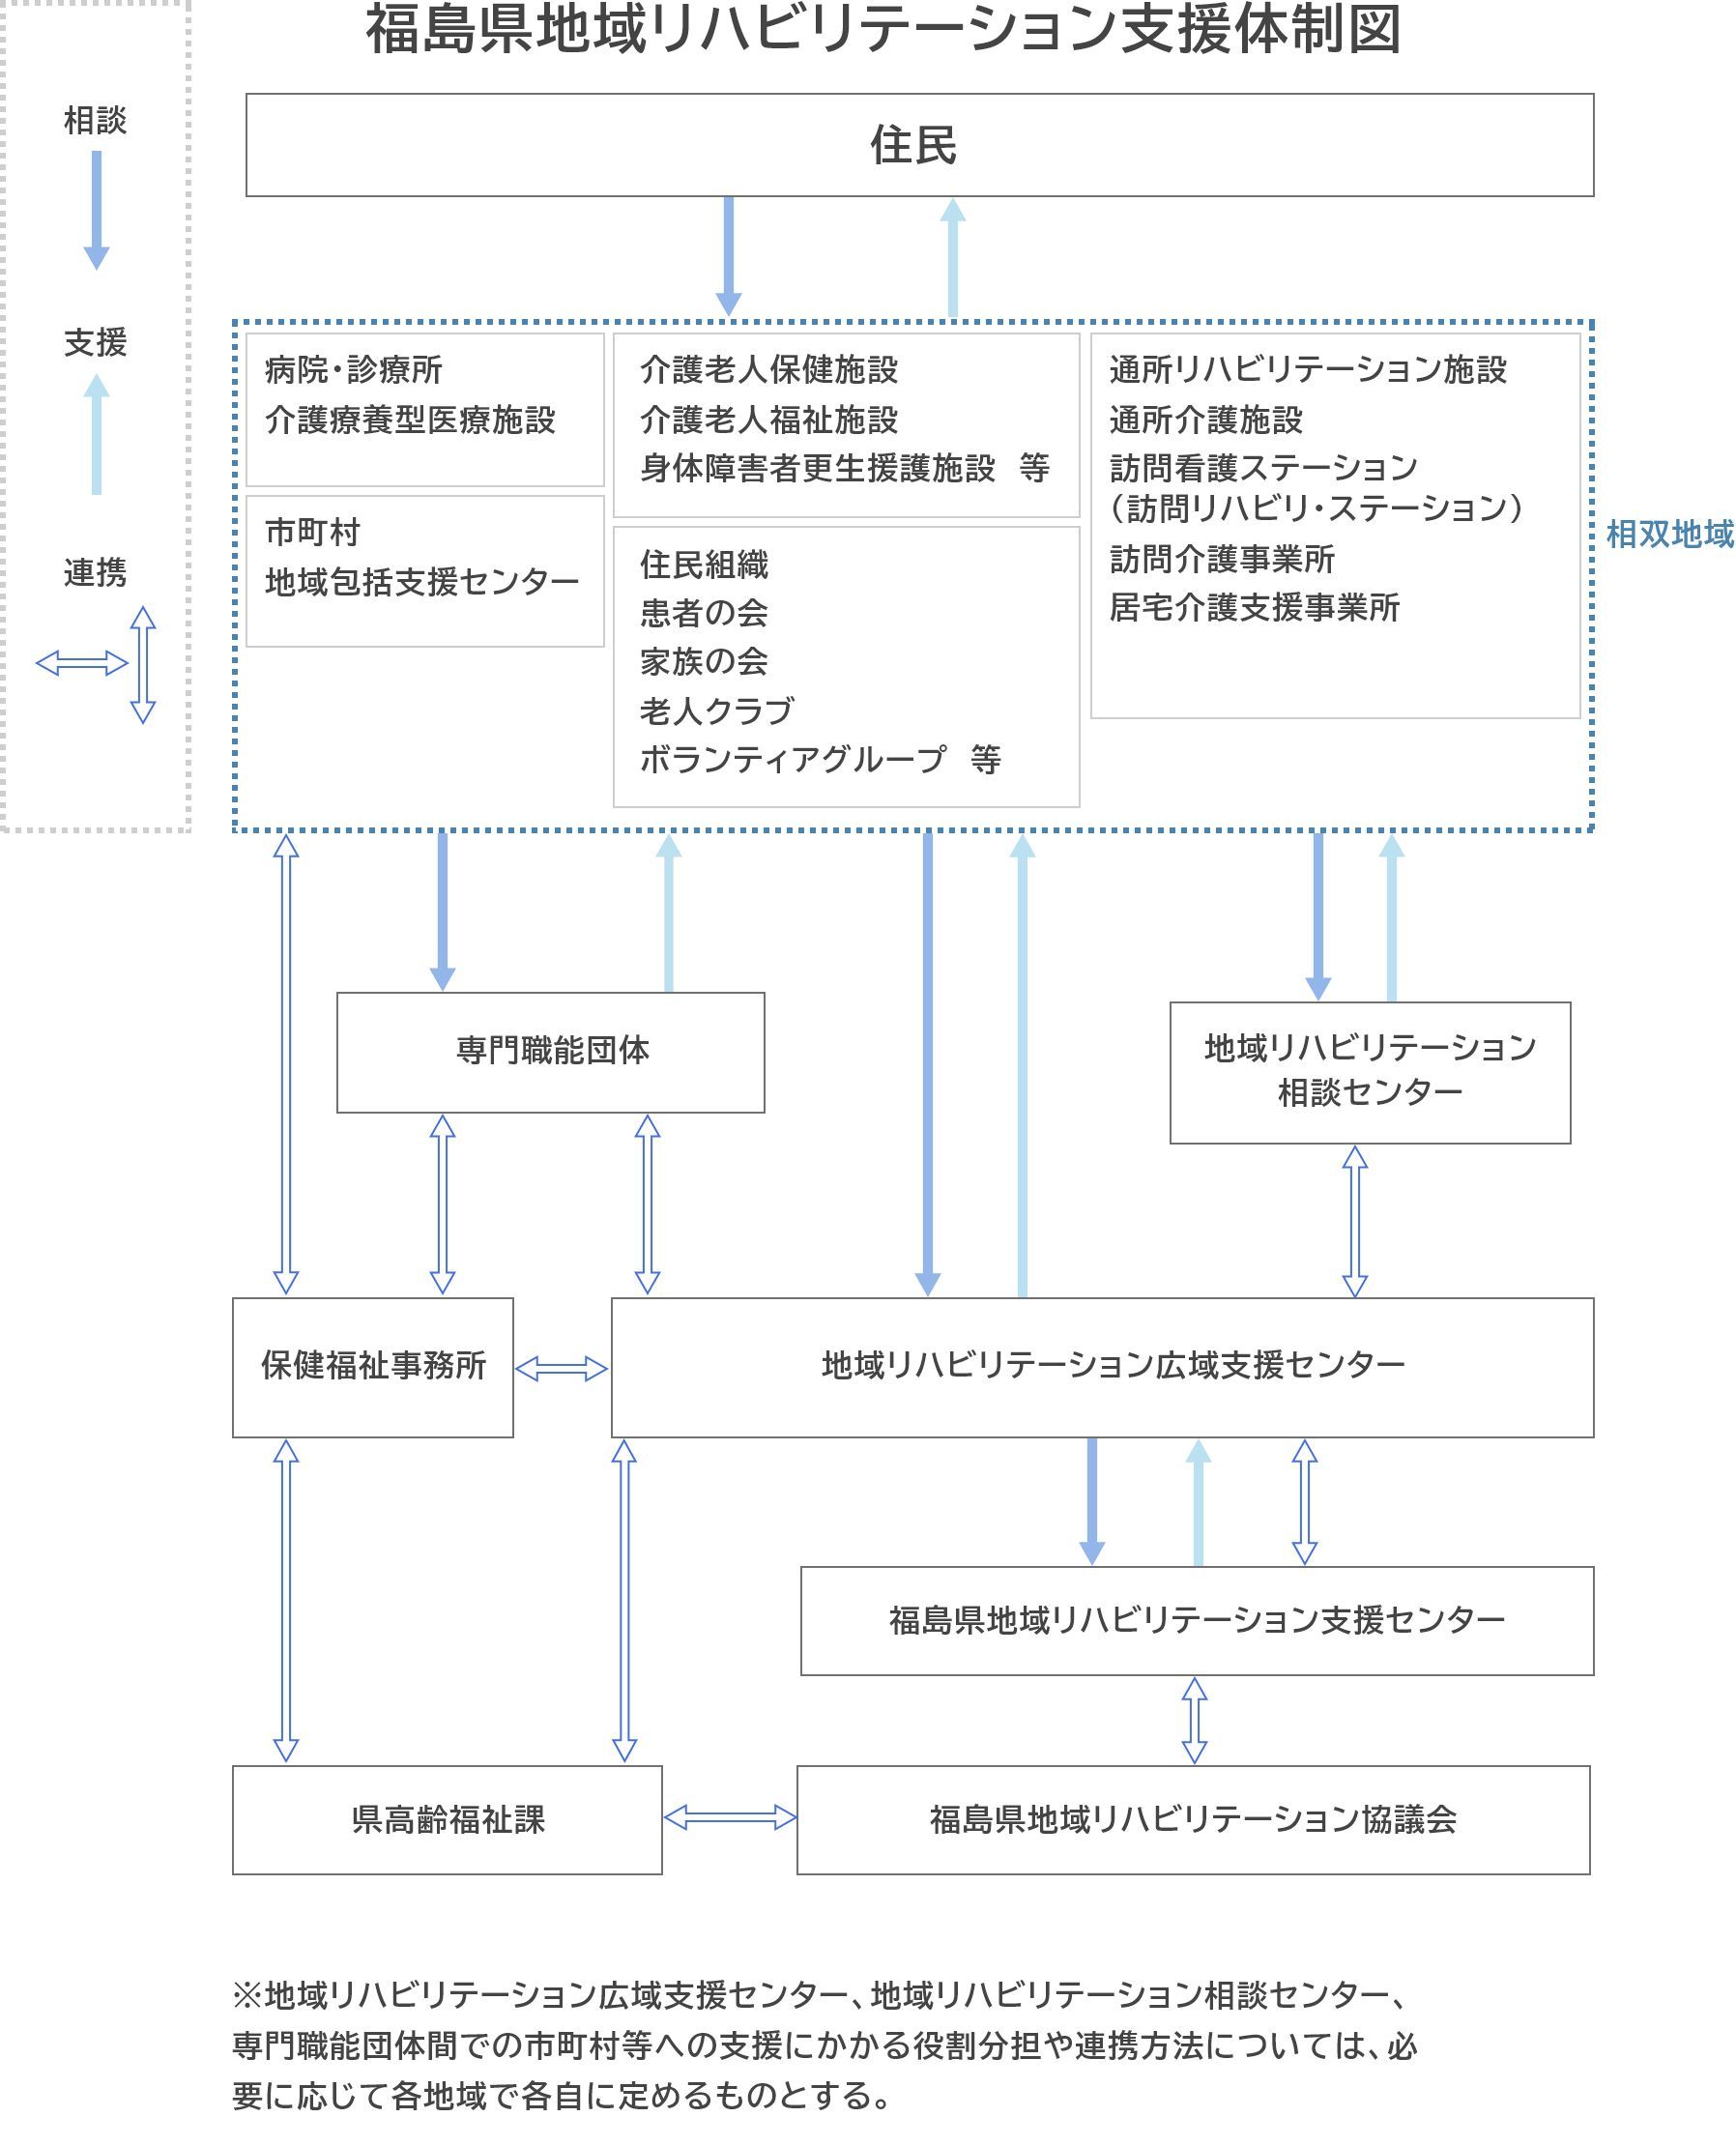 福島県地域リハビリテーション支援体制図